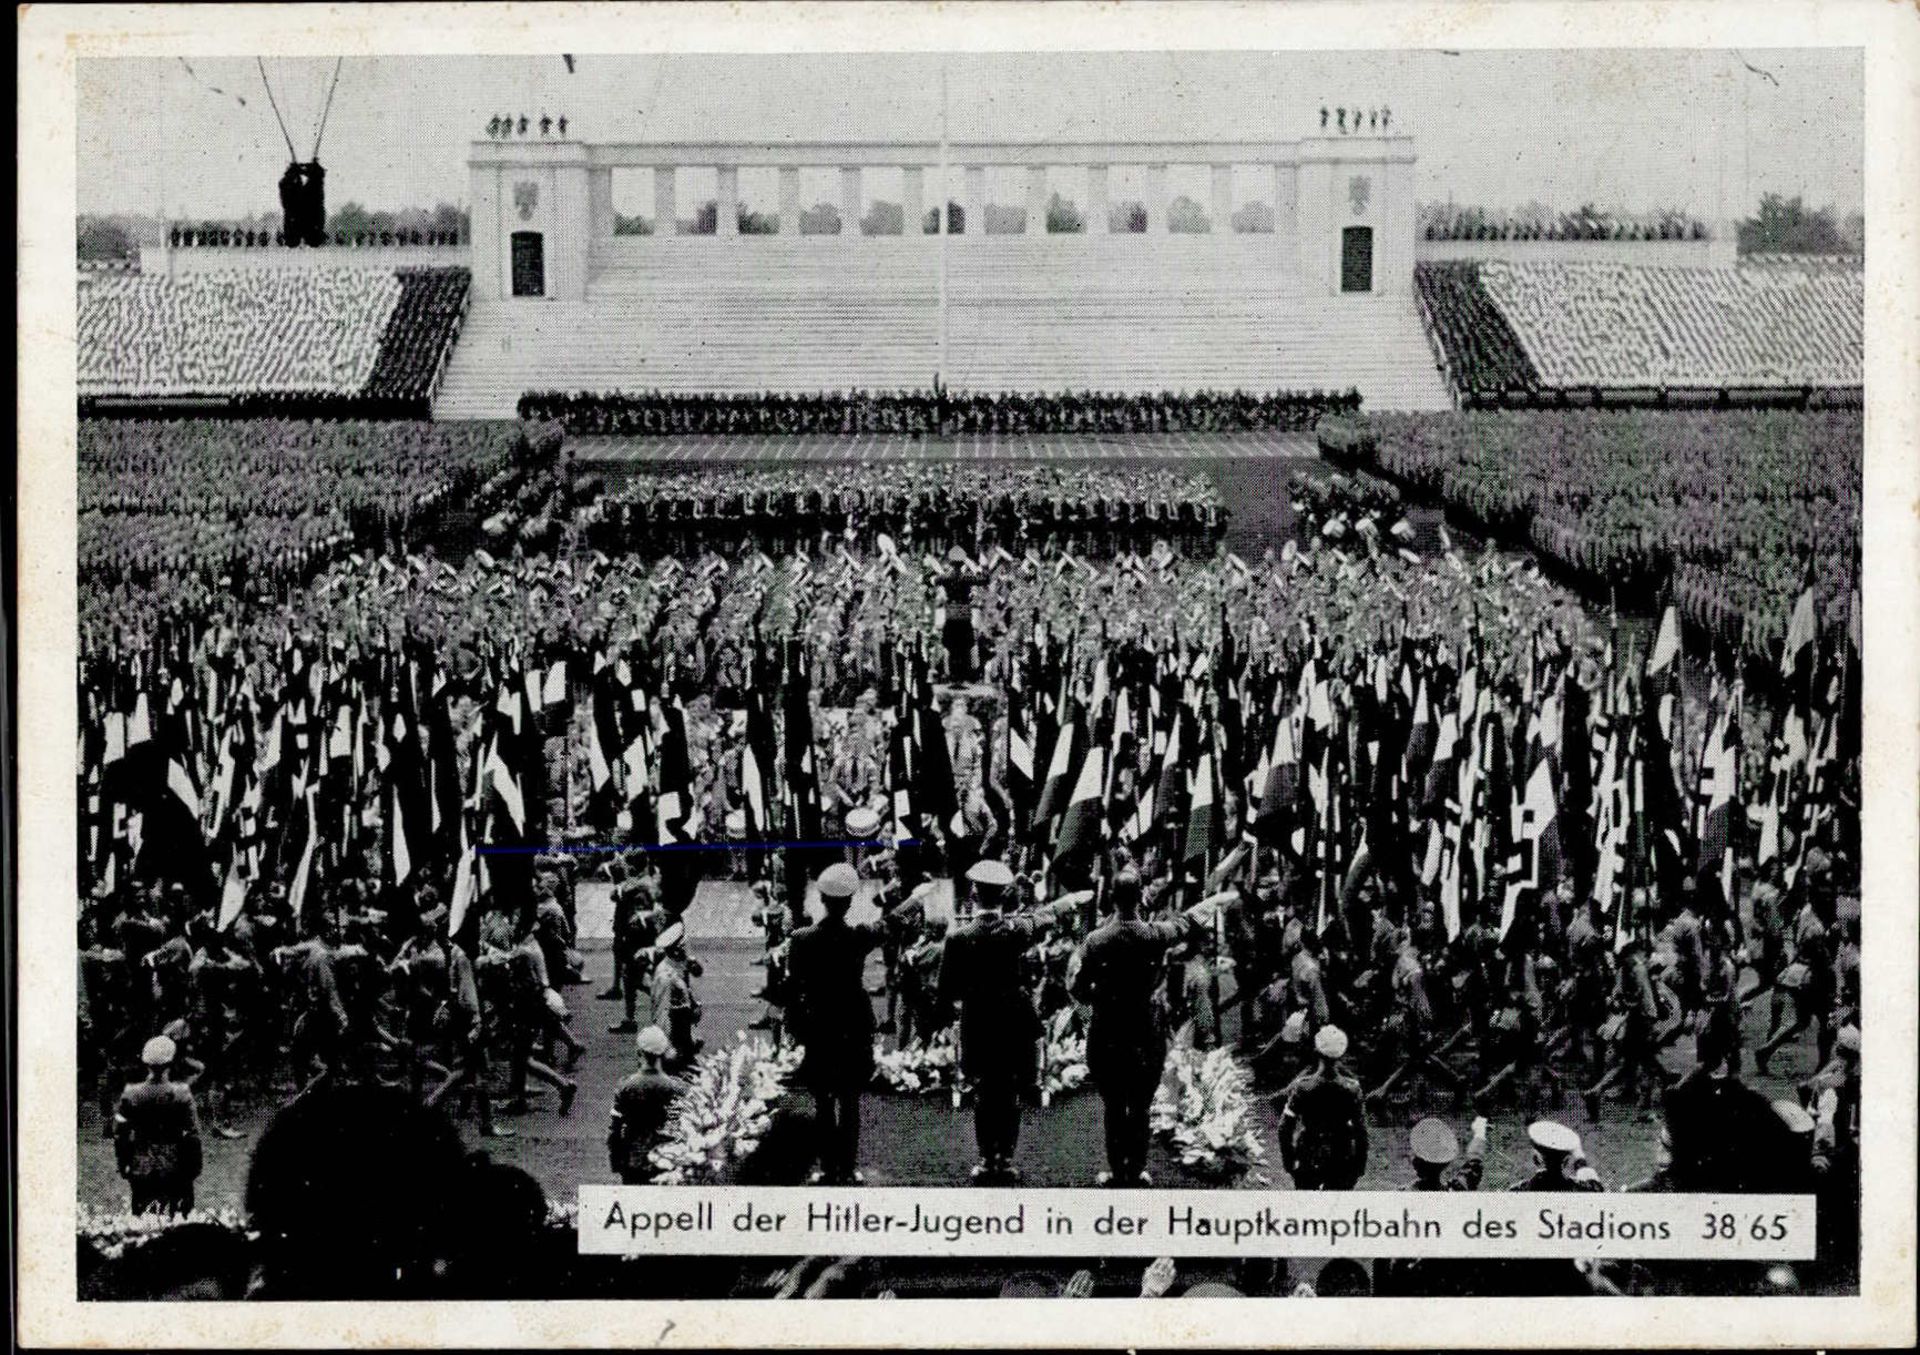 REICHSPARTEITAG NÜRNBERG 1938 WK II - Intra 38/65 Appell der HITLER-JUGEND I